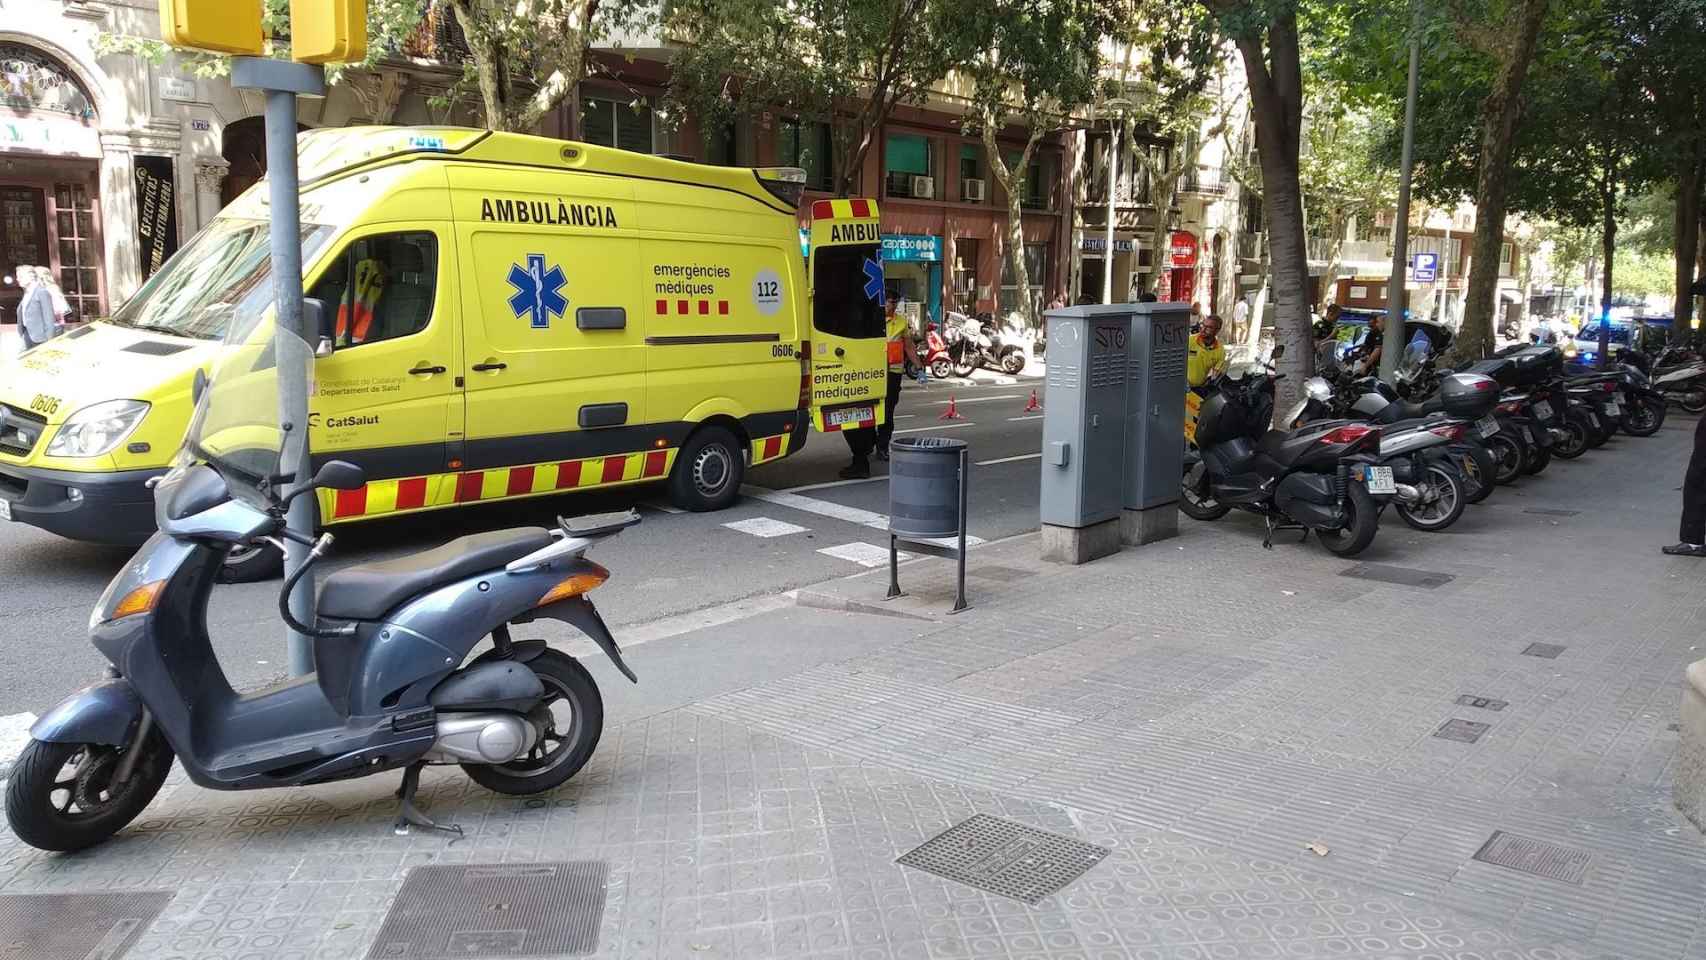 Una ambulancia durante un accidente en Barcelona, este viernes / JORDI SUBIRANA